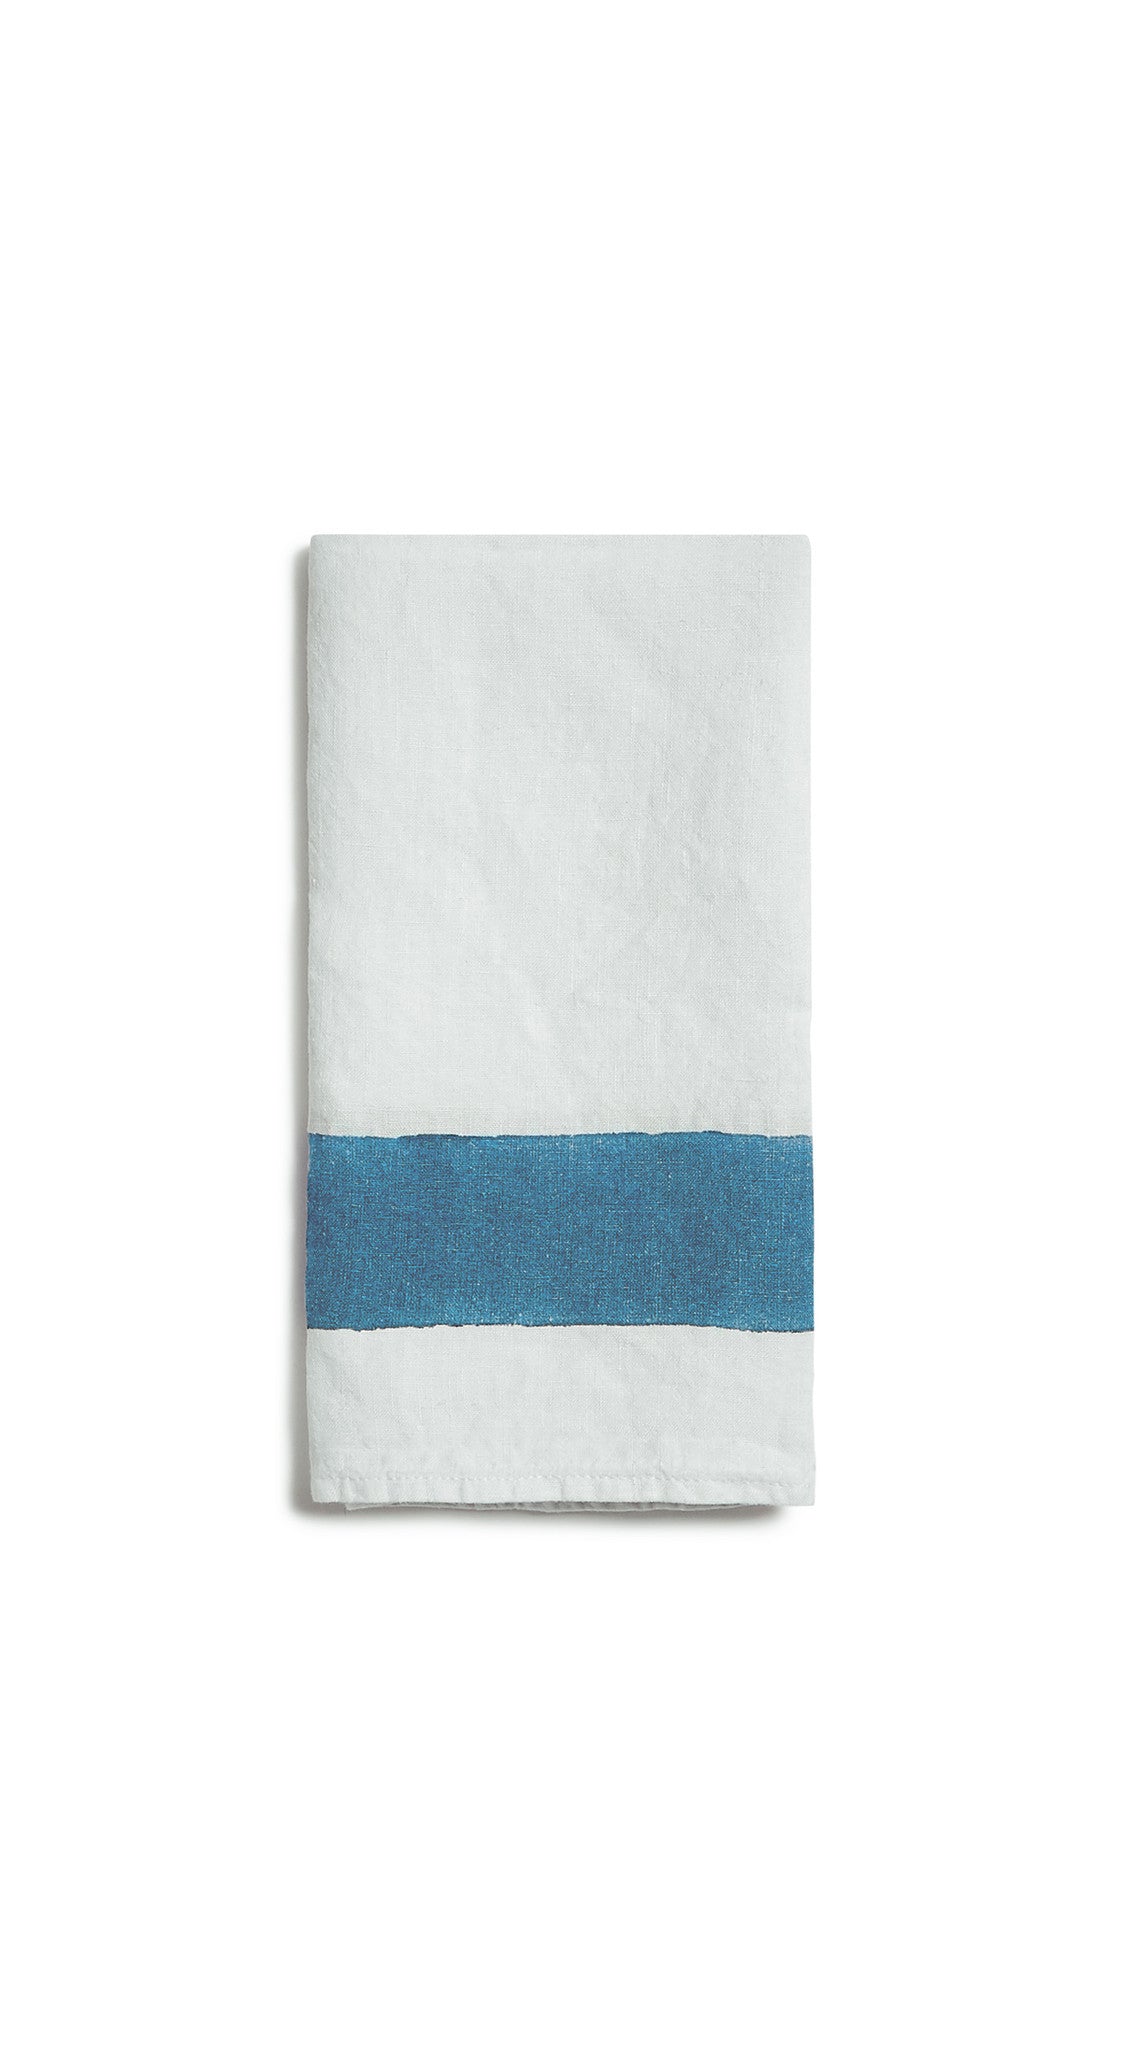 Cornice Linen Napkin in Sky Blue, 50x50cm